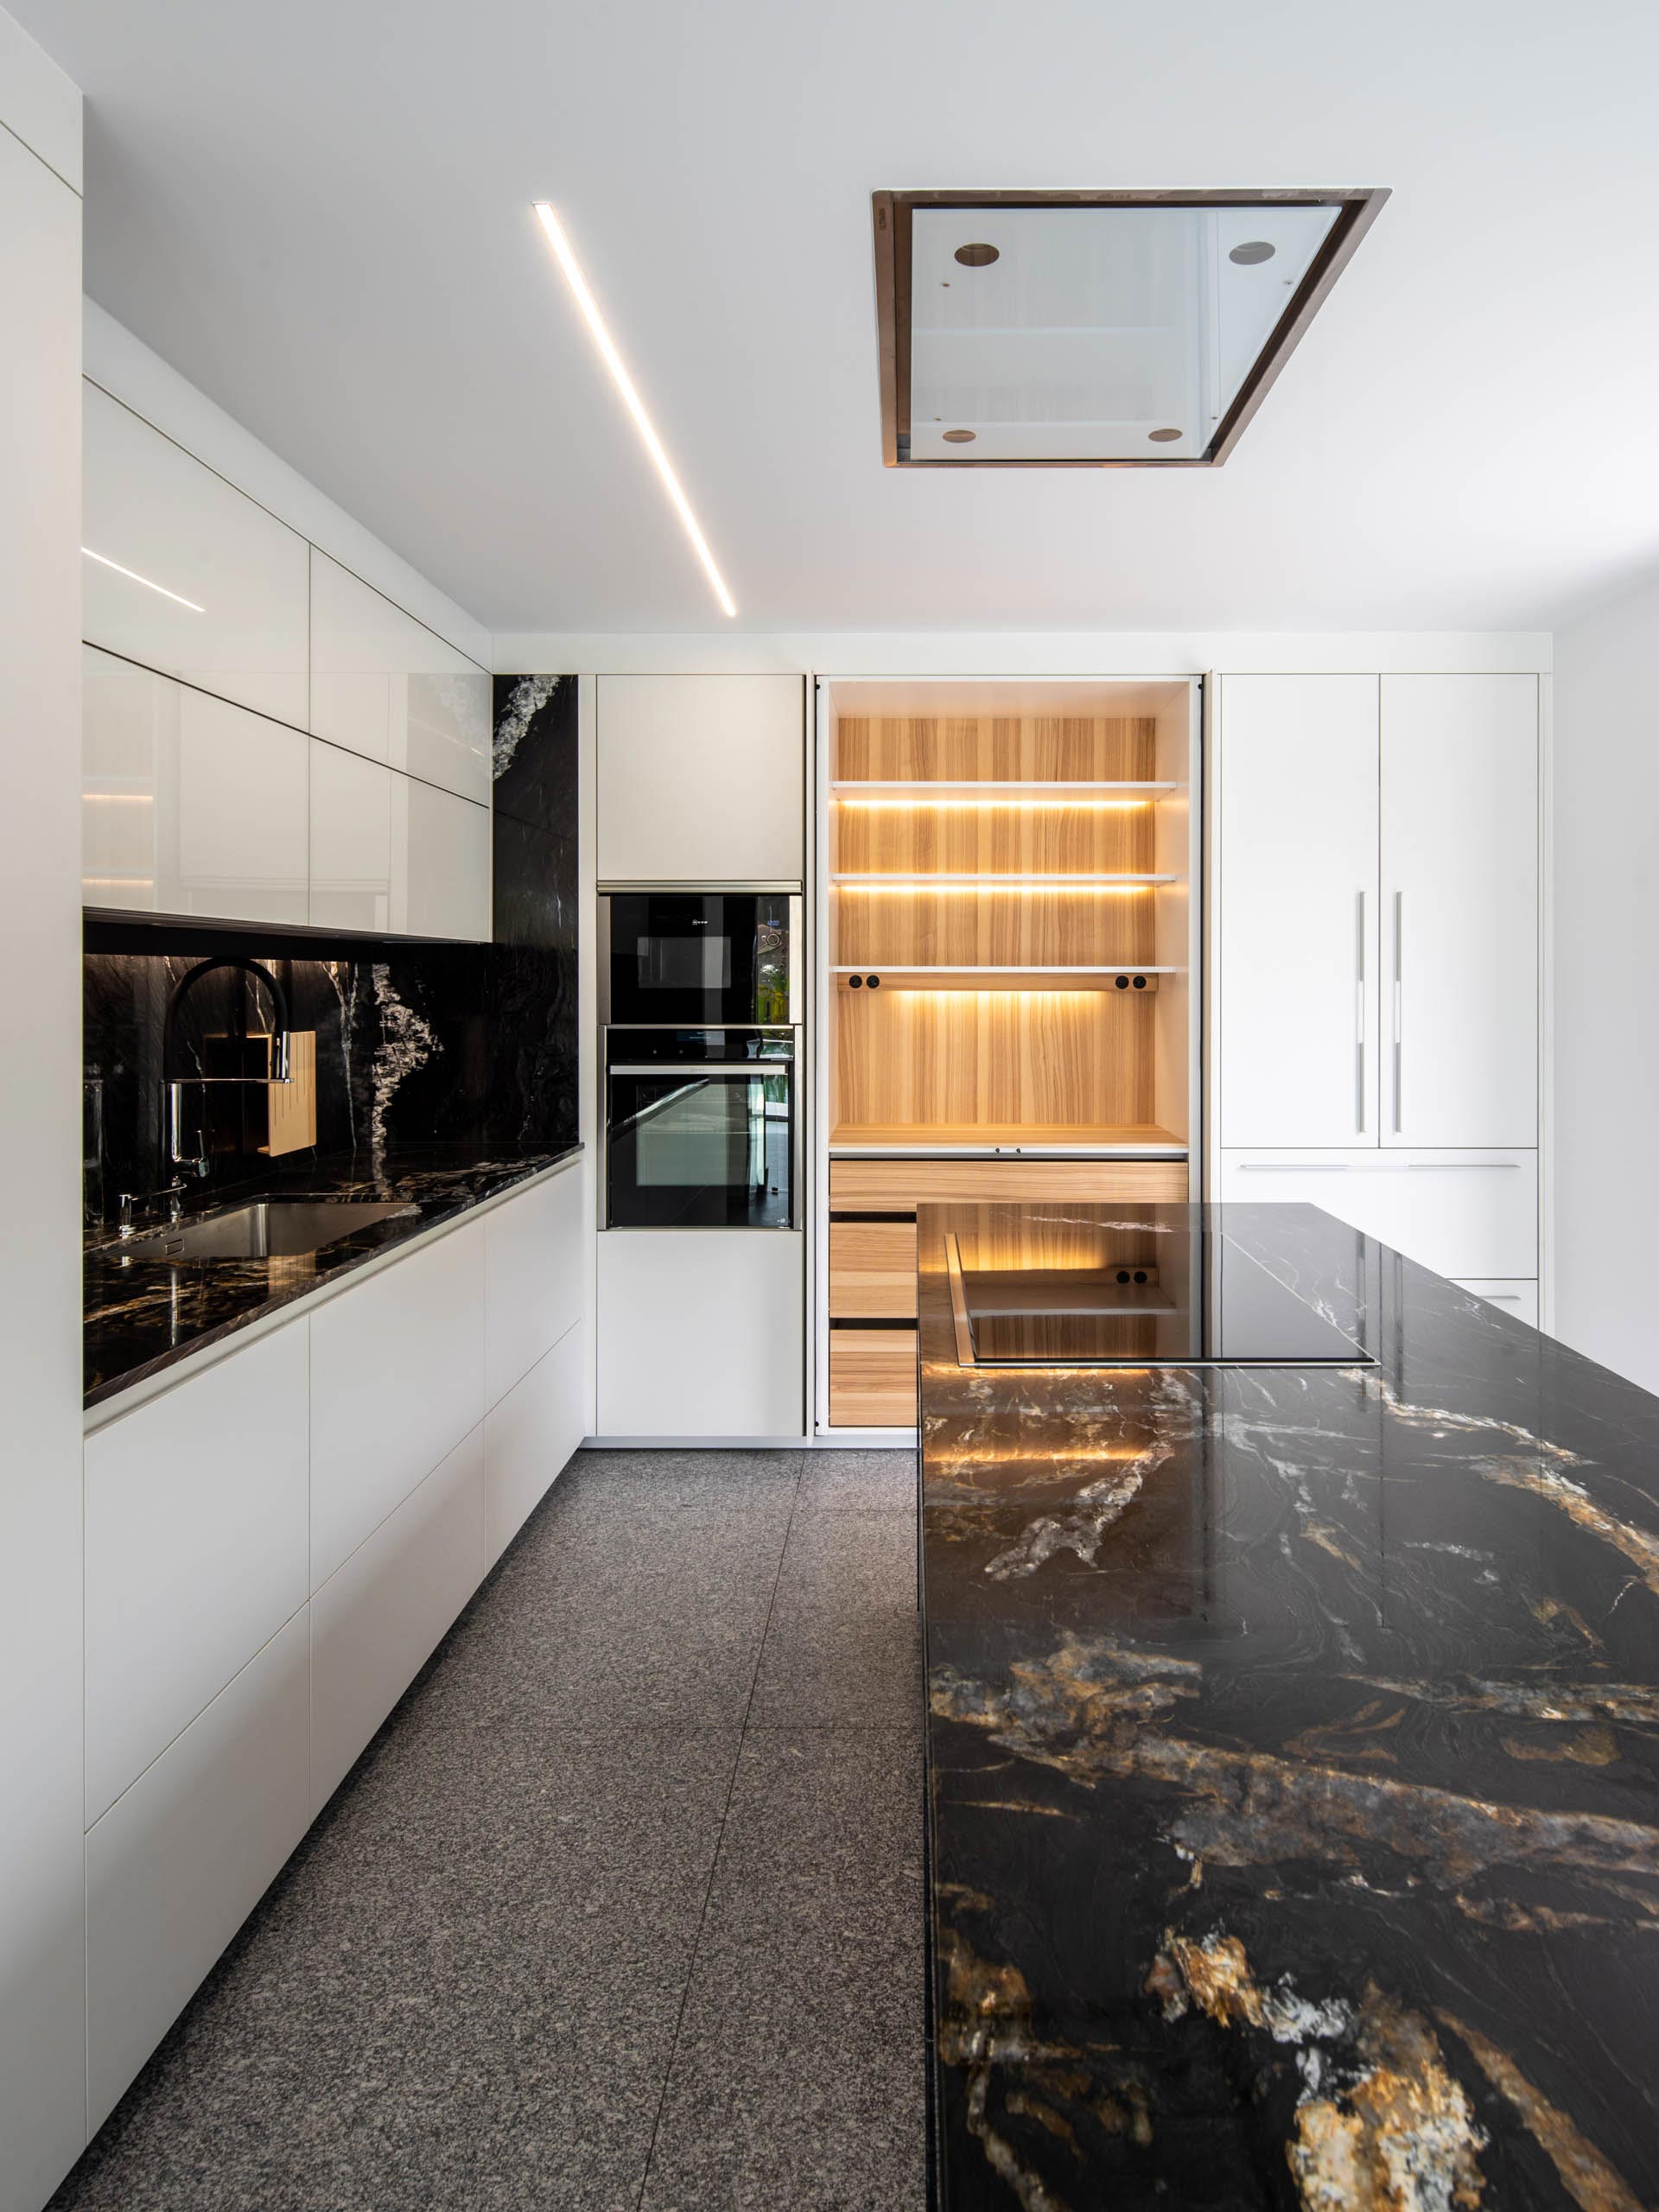 De door Santos ontworpen keukens gezien door de ogen van fotograaf Héctor Santos-Diez